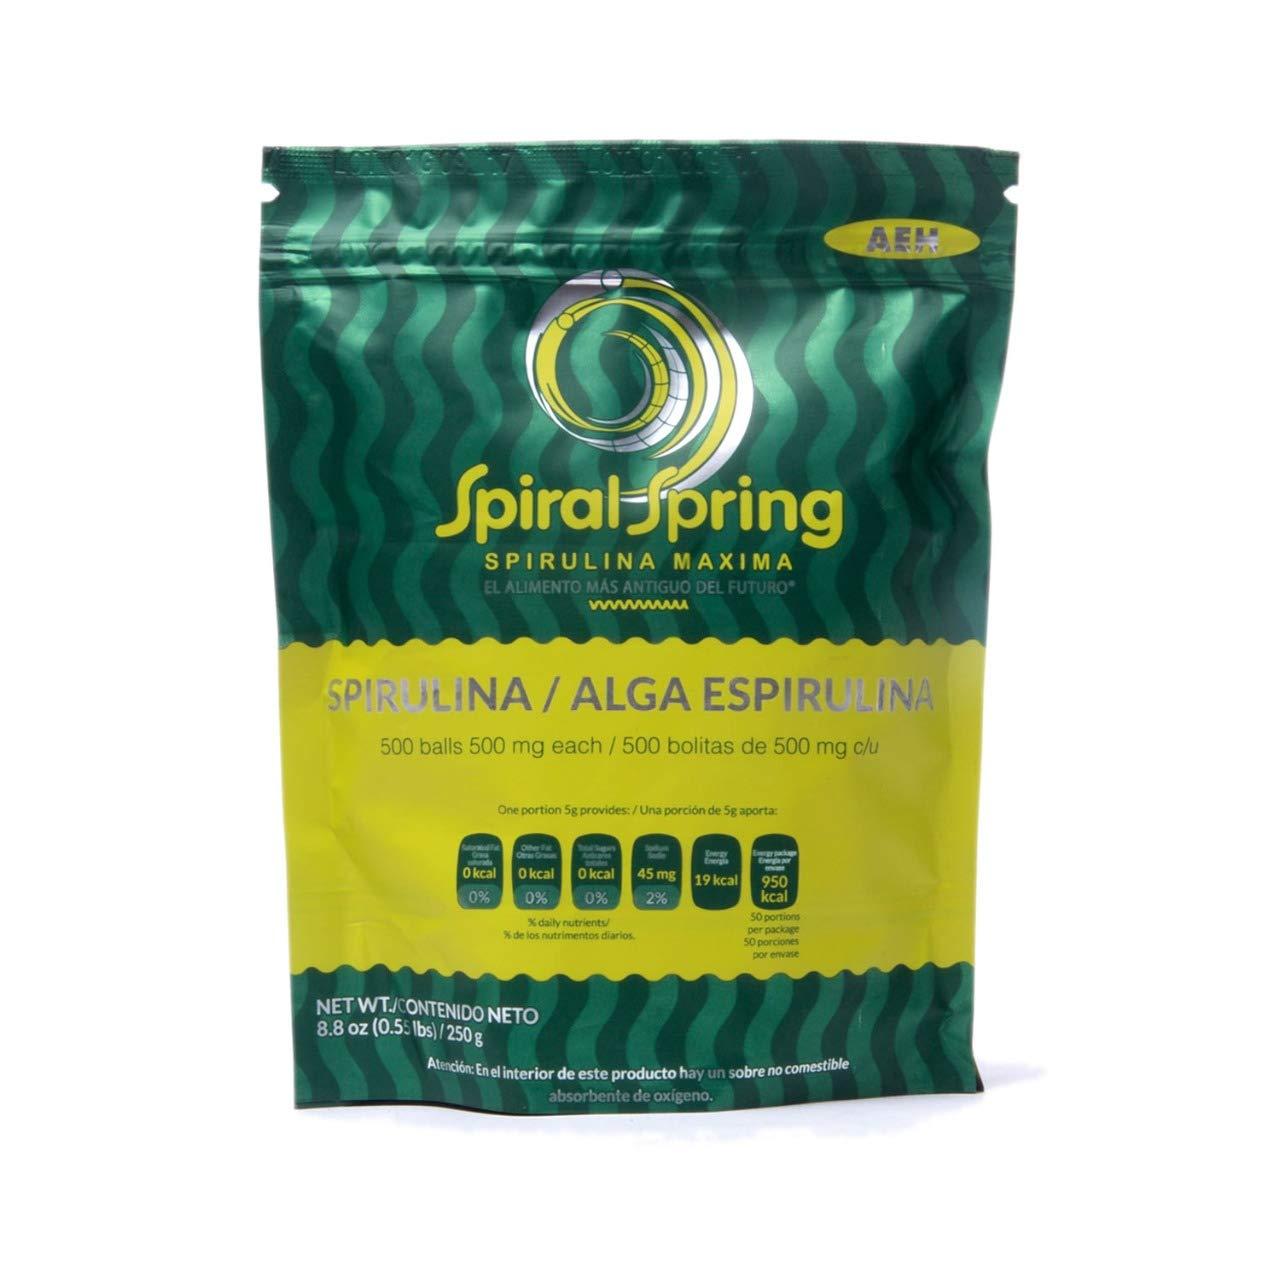 Spiral Spring Spirulina Maxima Tablets -8.8oz 250g